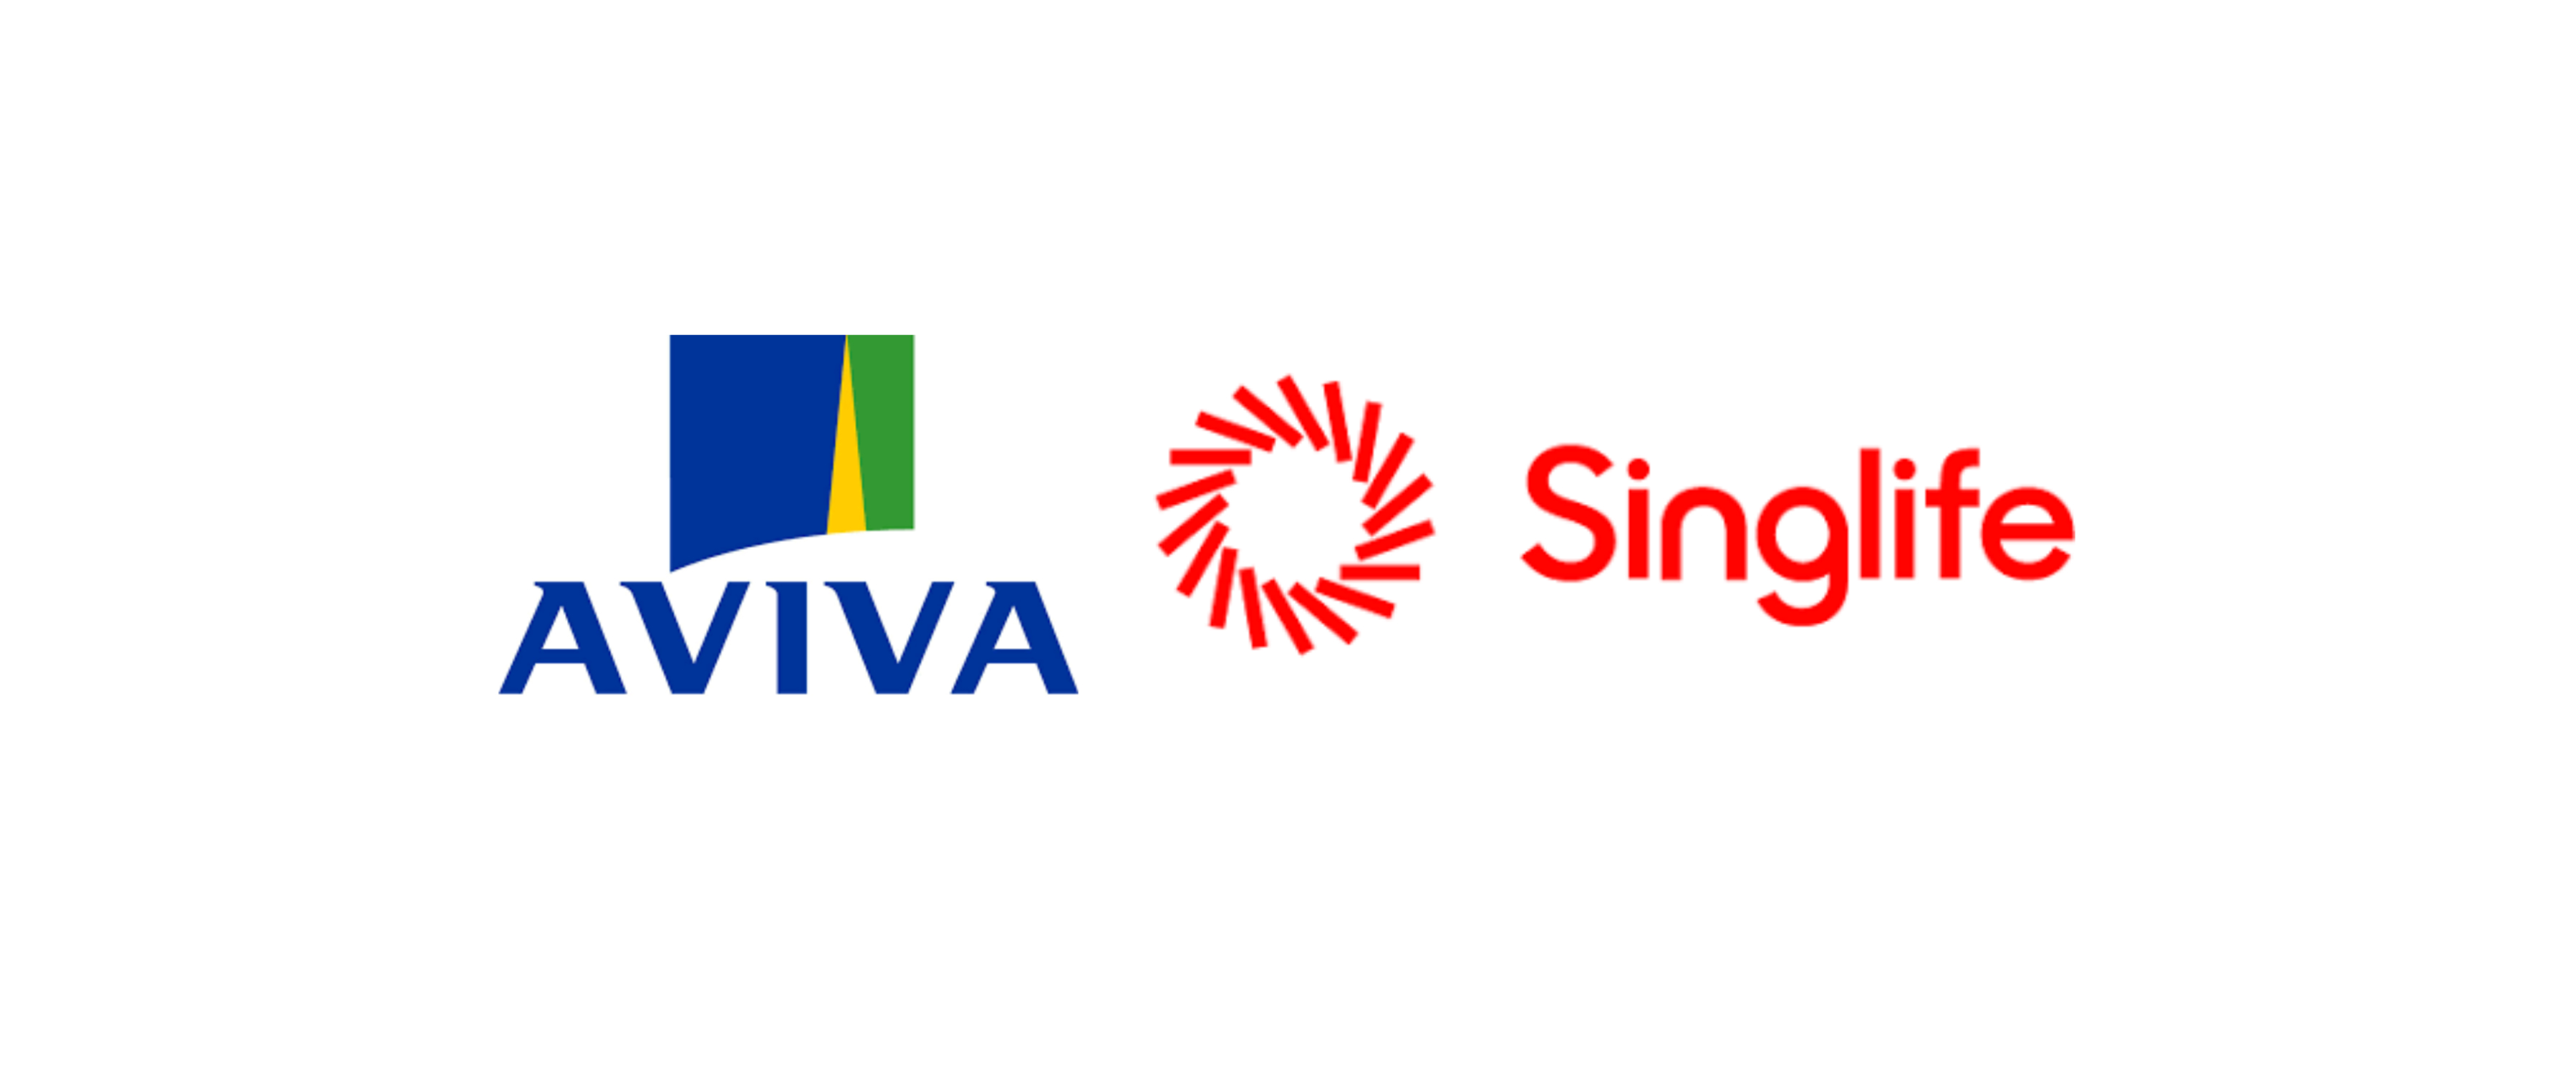 Aviva pledges to return €4.7bn to shareholders but activist wants more